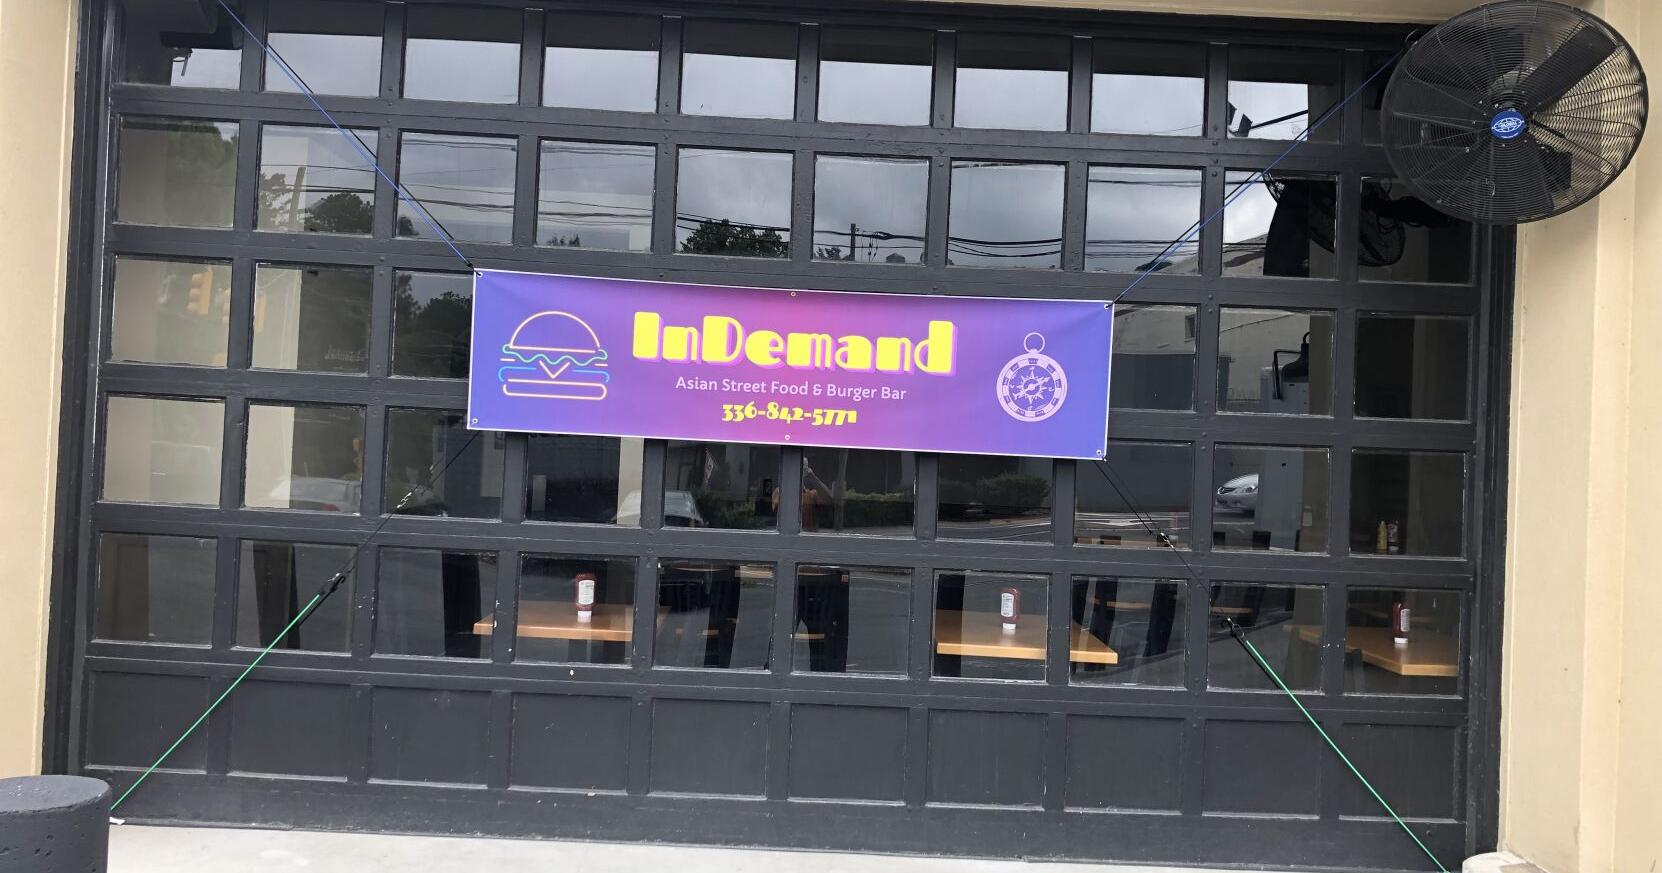 InDemand opens in former HOPS spot in Winston-Salem